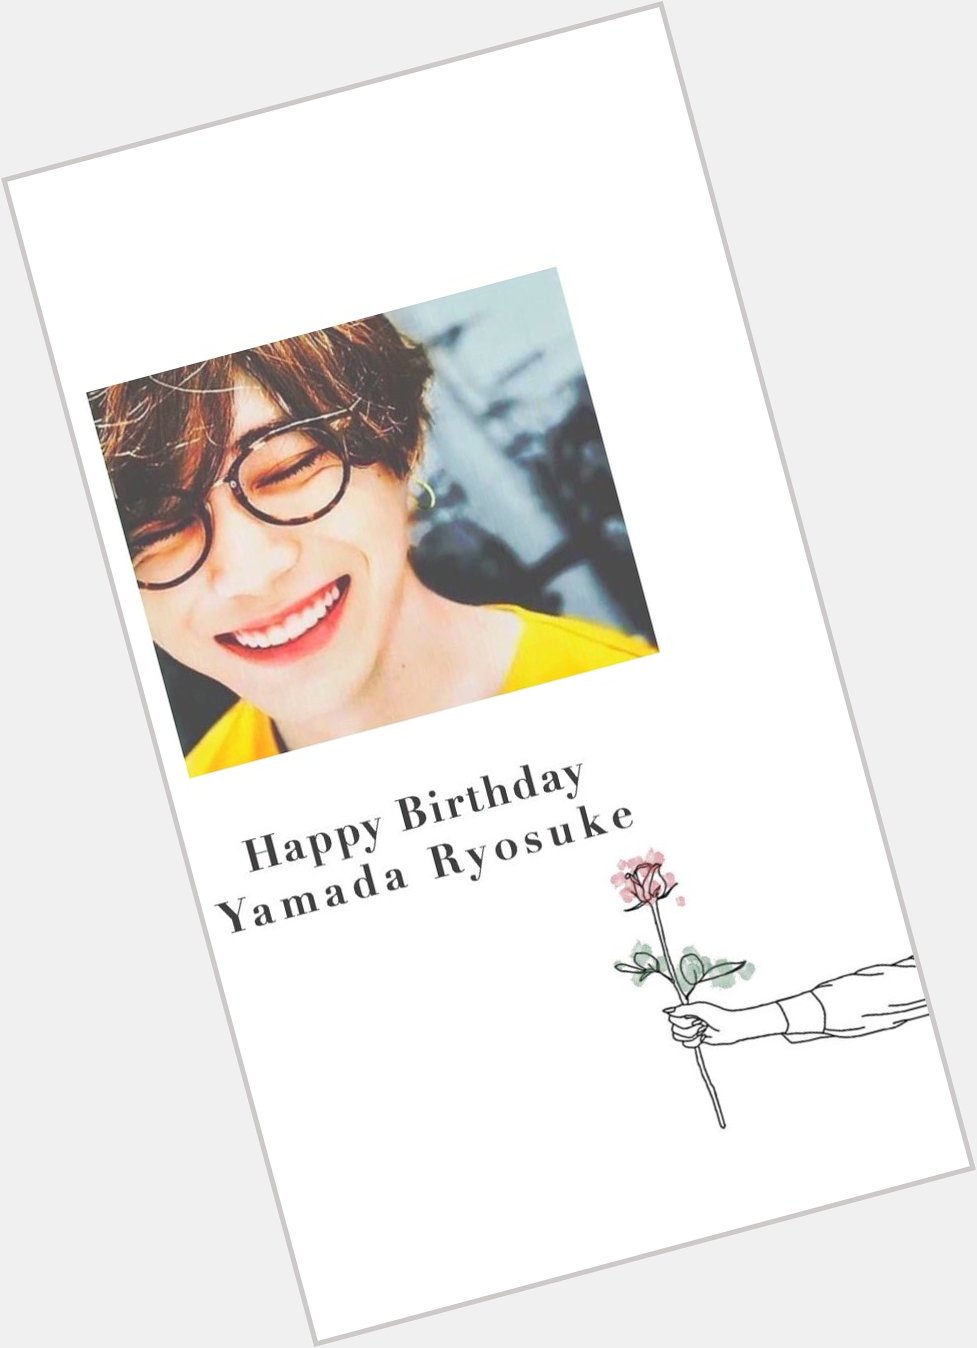  Happy Birthday  Yamada Ryosuke                                         